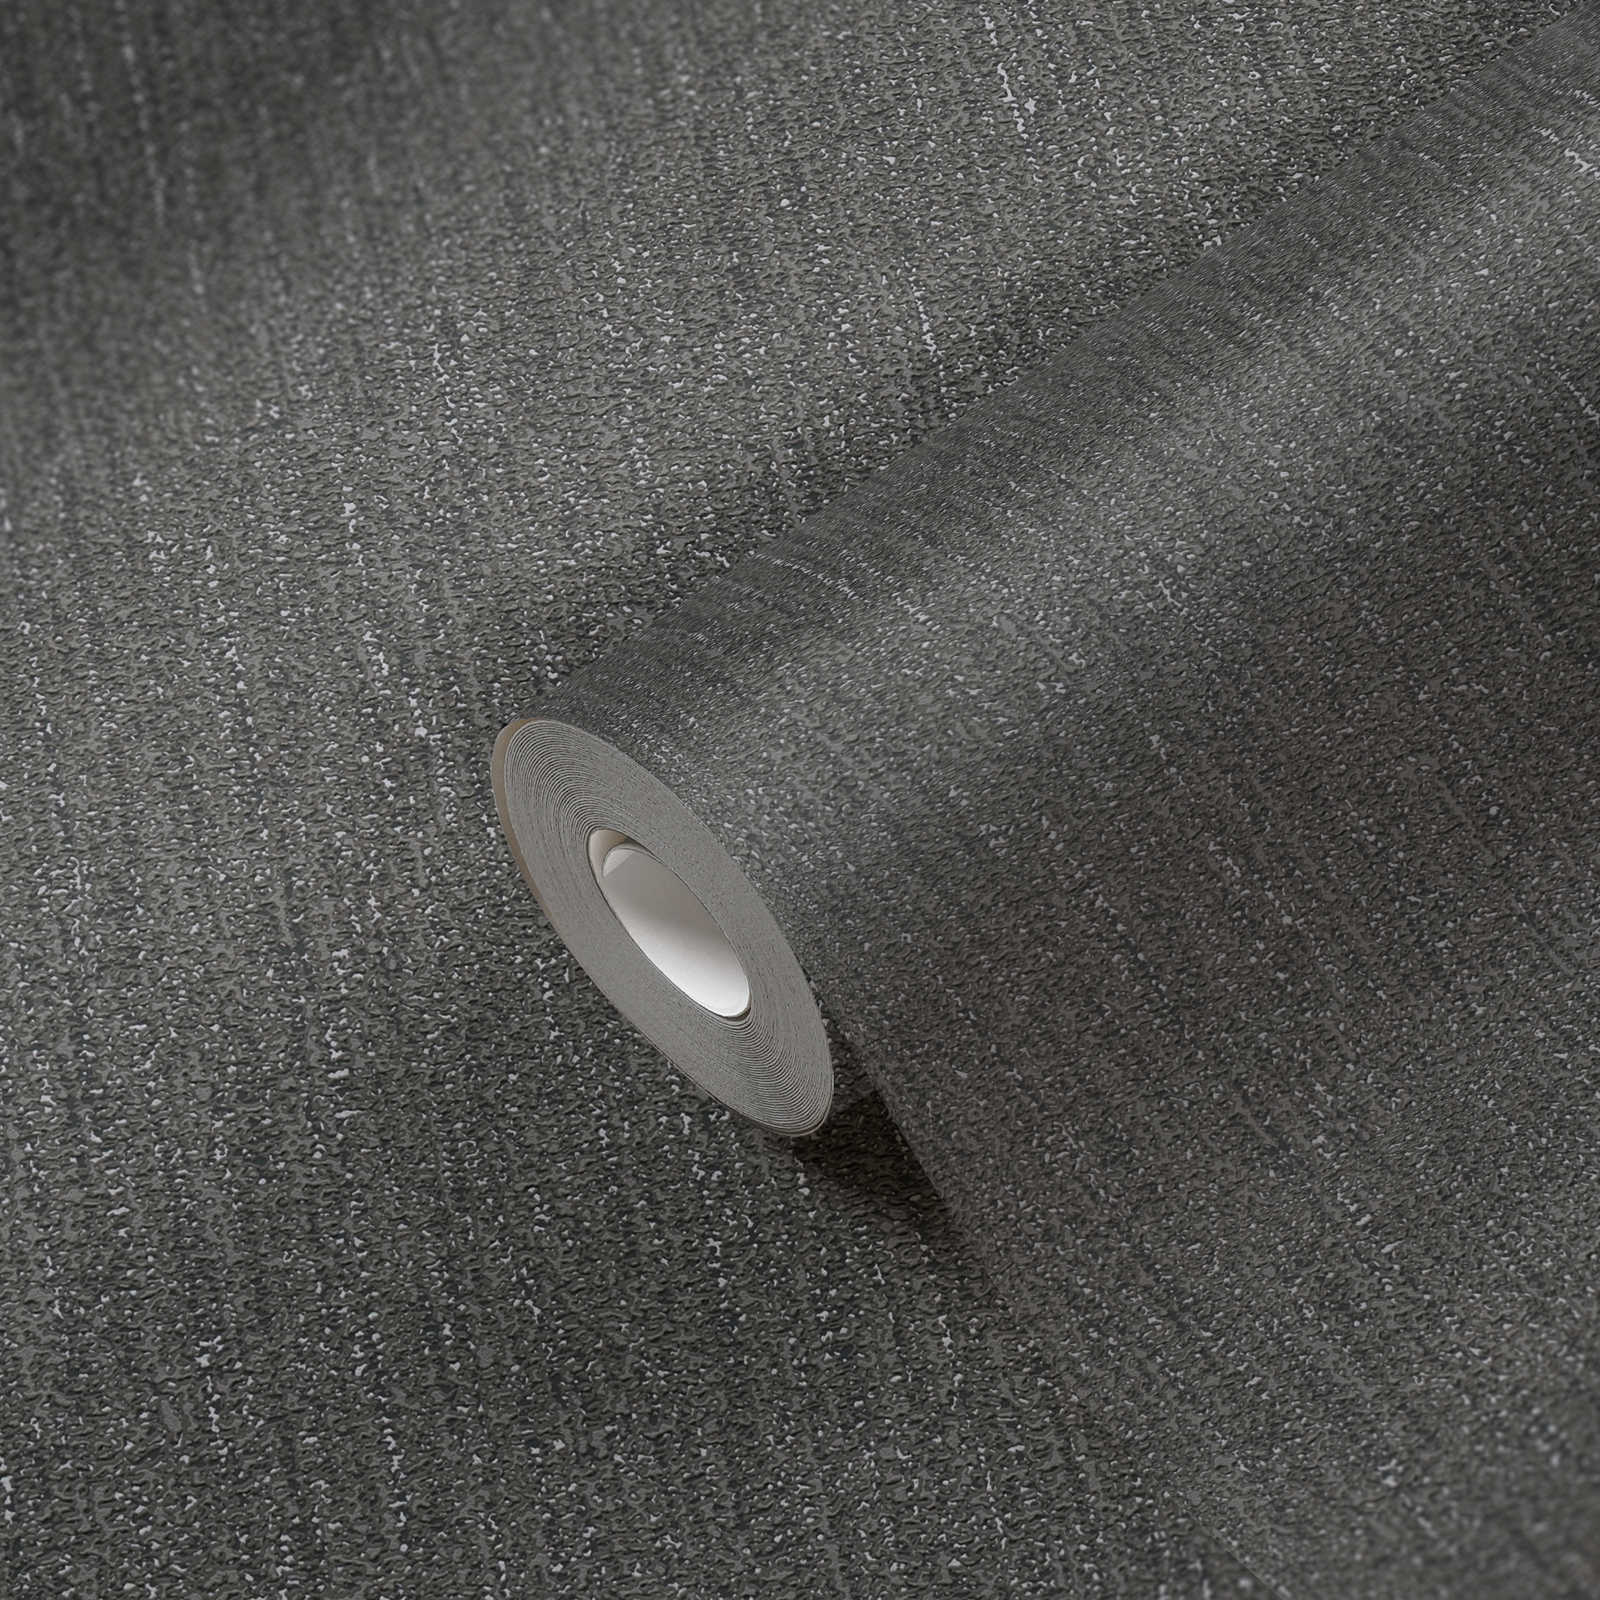             Papier peint légèrement brillant avec structure tissée - noir, gris, argenté
        